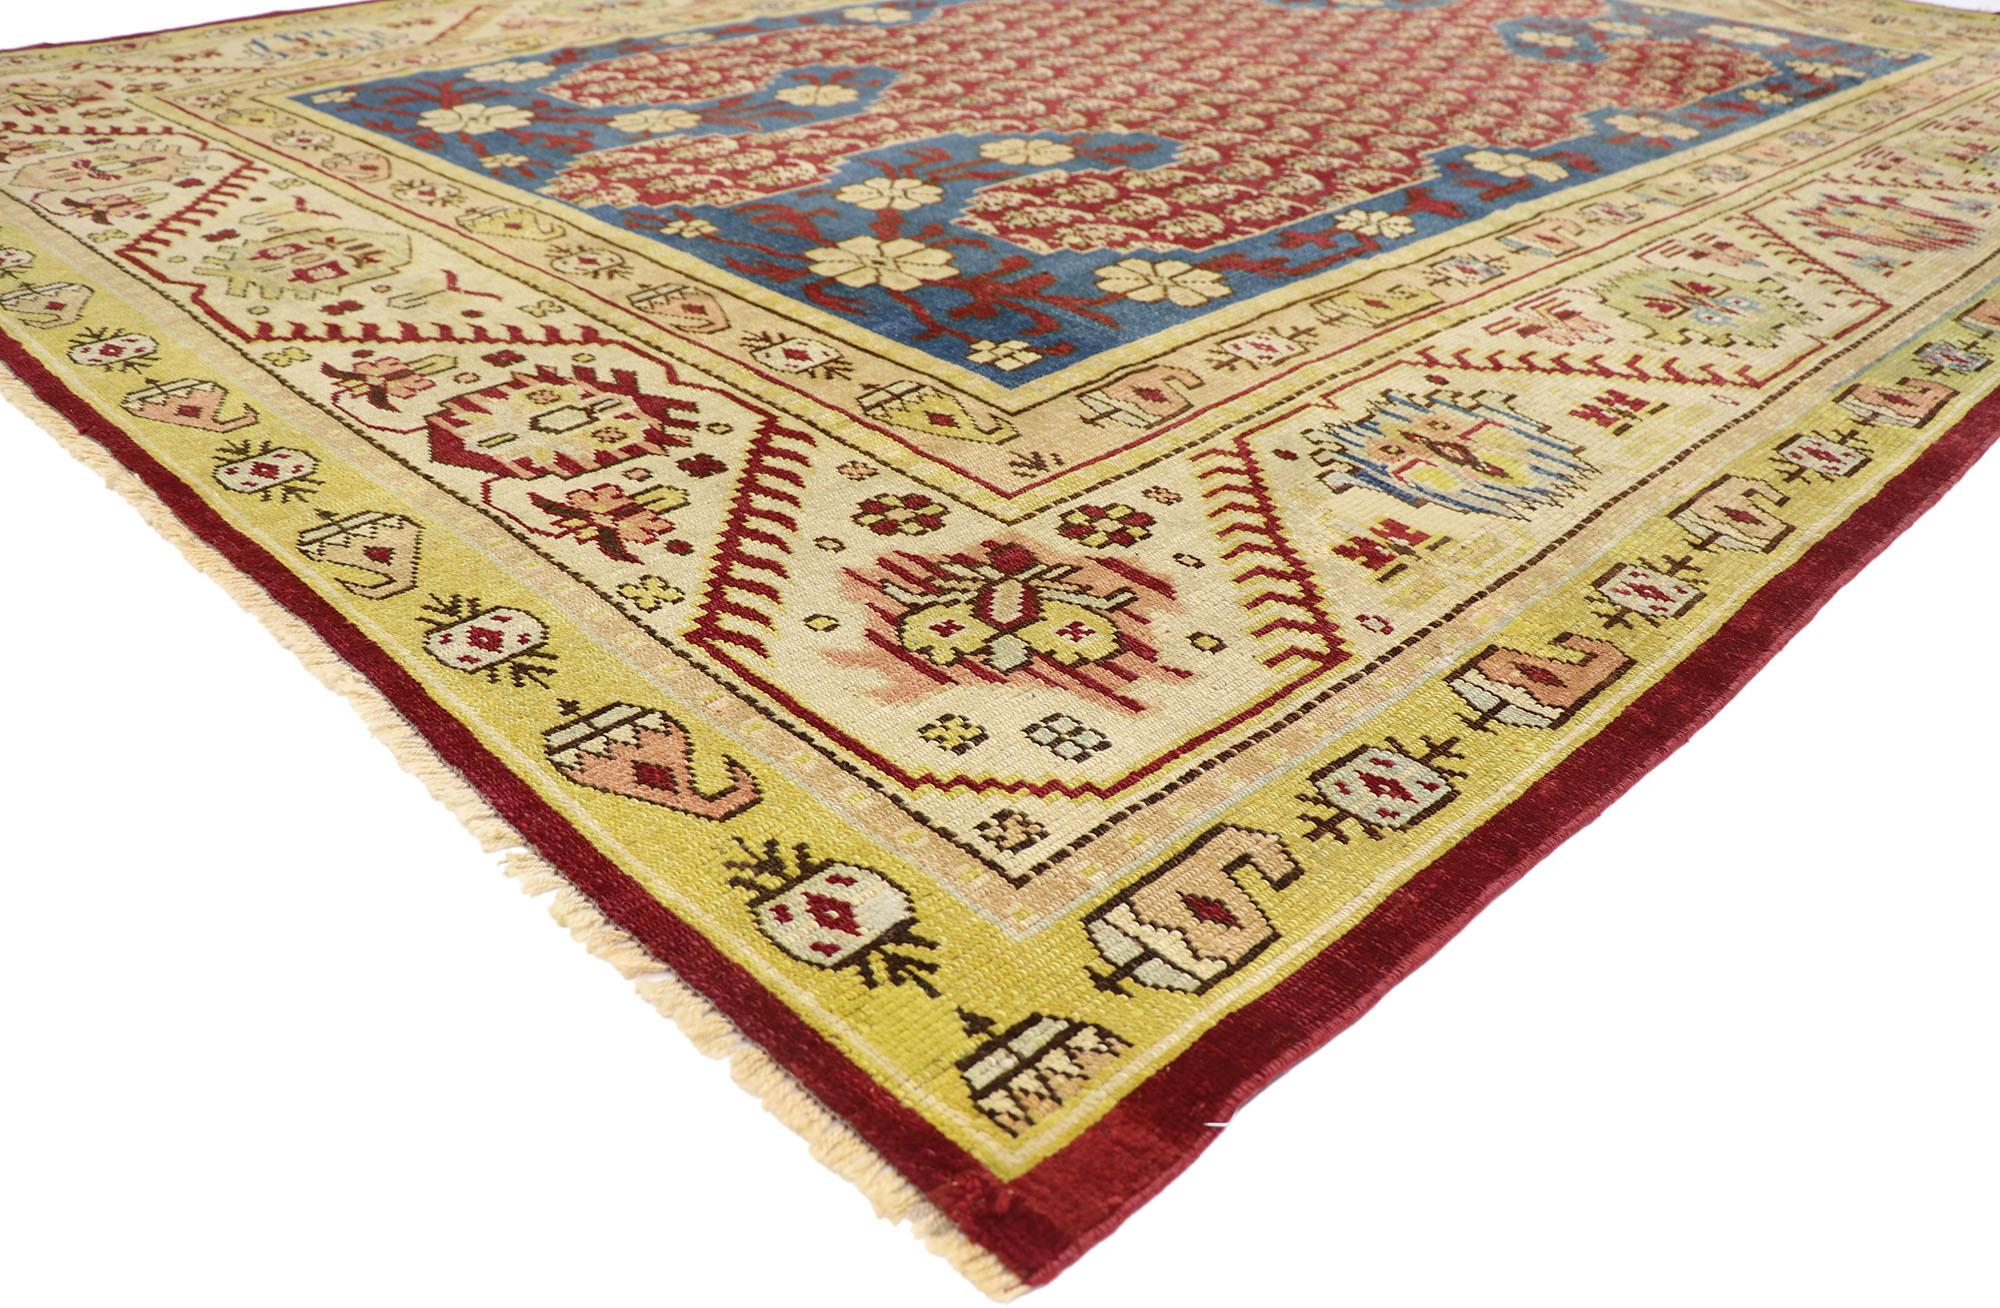 53563 Antiker türkischer Oushak-Teppich, 09'05 x 12'11. Dieser antike türkische Oushak-Teppich besticht durch seine reiche Farbpalette und sein vom Stammesstil inspiriertes Design. Sein Herzstück ist ein kräftiges rotes Fellmotiv, ein Symbol für